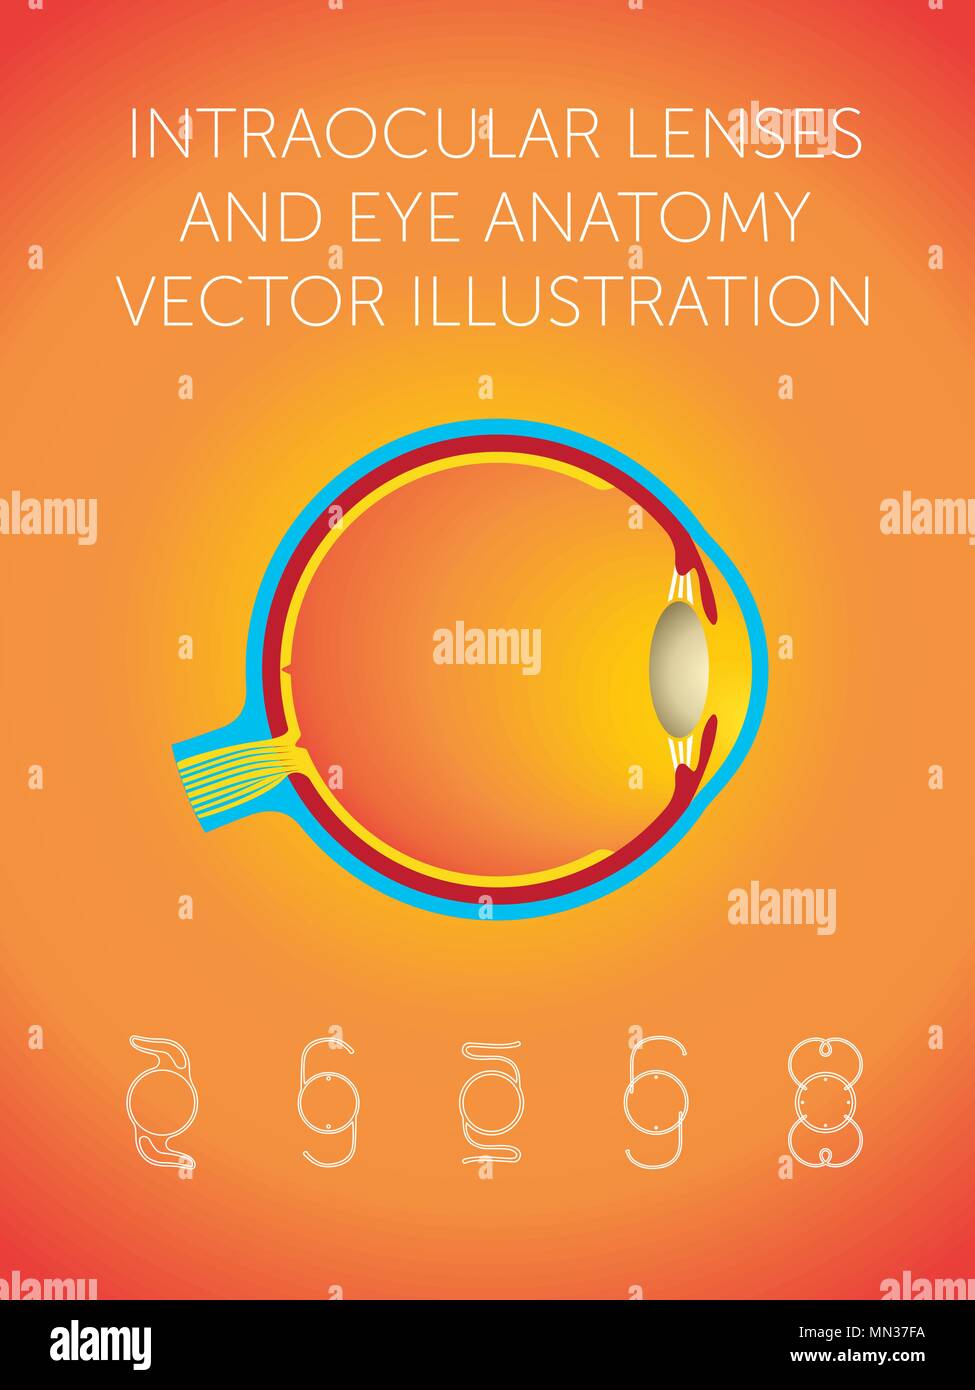 Schematische Darstellung der Struktur des Auges und Arten von Intraokularlinsen auf orange Hintergrund Stock Vektor